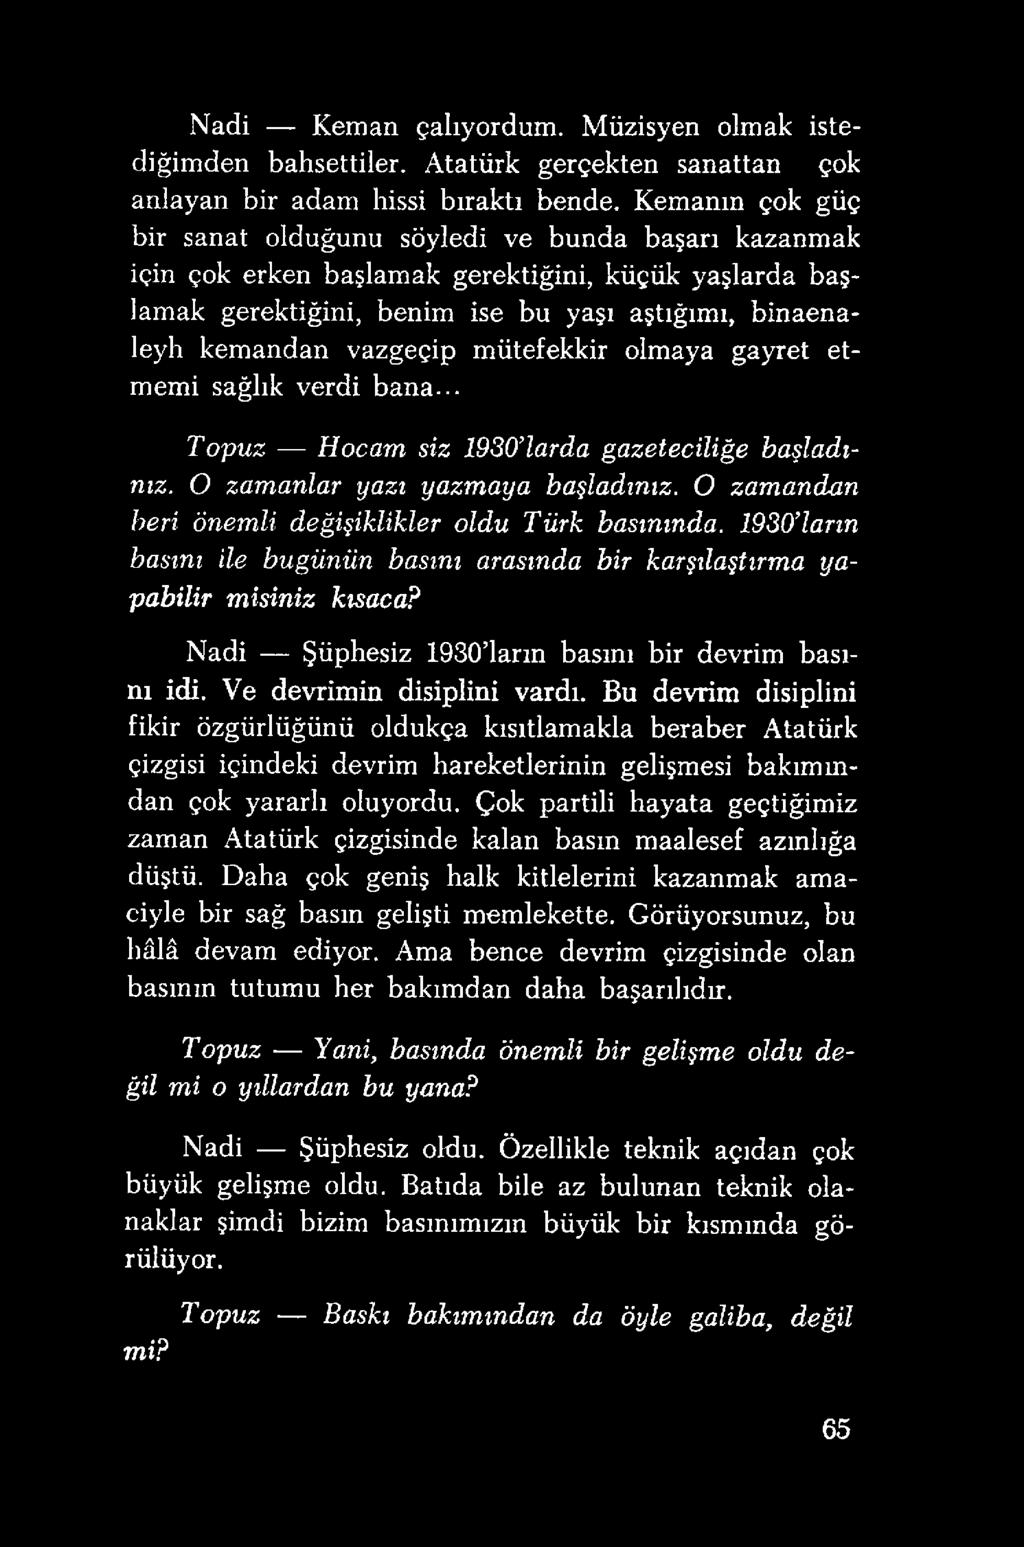 Bu devrim disiplini fikir özgürlüğünü oldukça kısıtlamakla beraber Atatürk çizgisi içindeki devrim hareketlerinin gelişmesi bakım m- dan çok yararlı oluyordu.